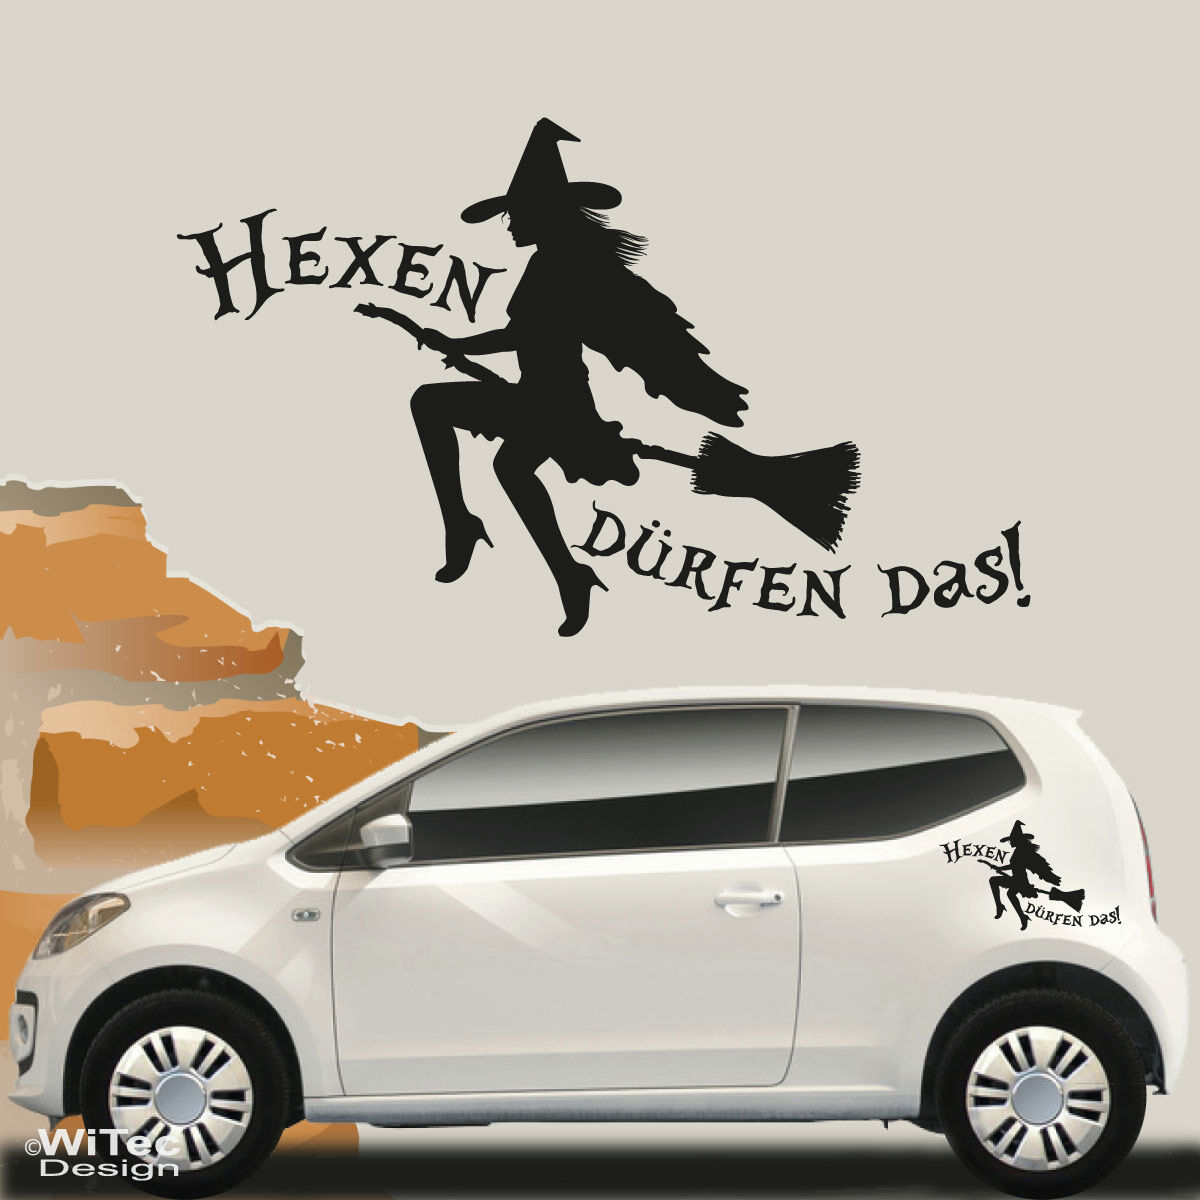 Auto Aufkleber Hexe Katze Hexen dürfen das Autoaufkleber Sticker lustig  Spruch